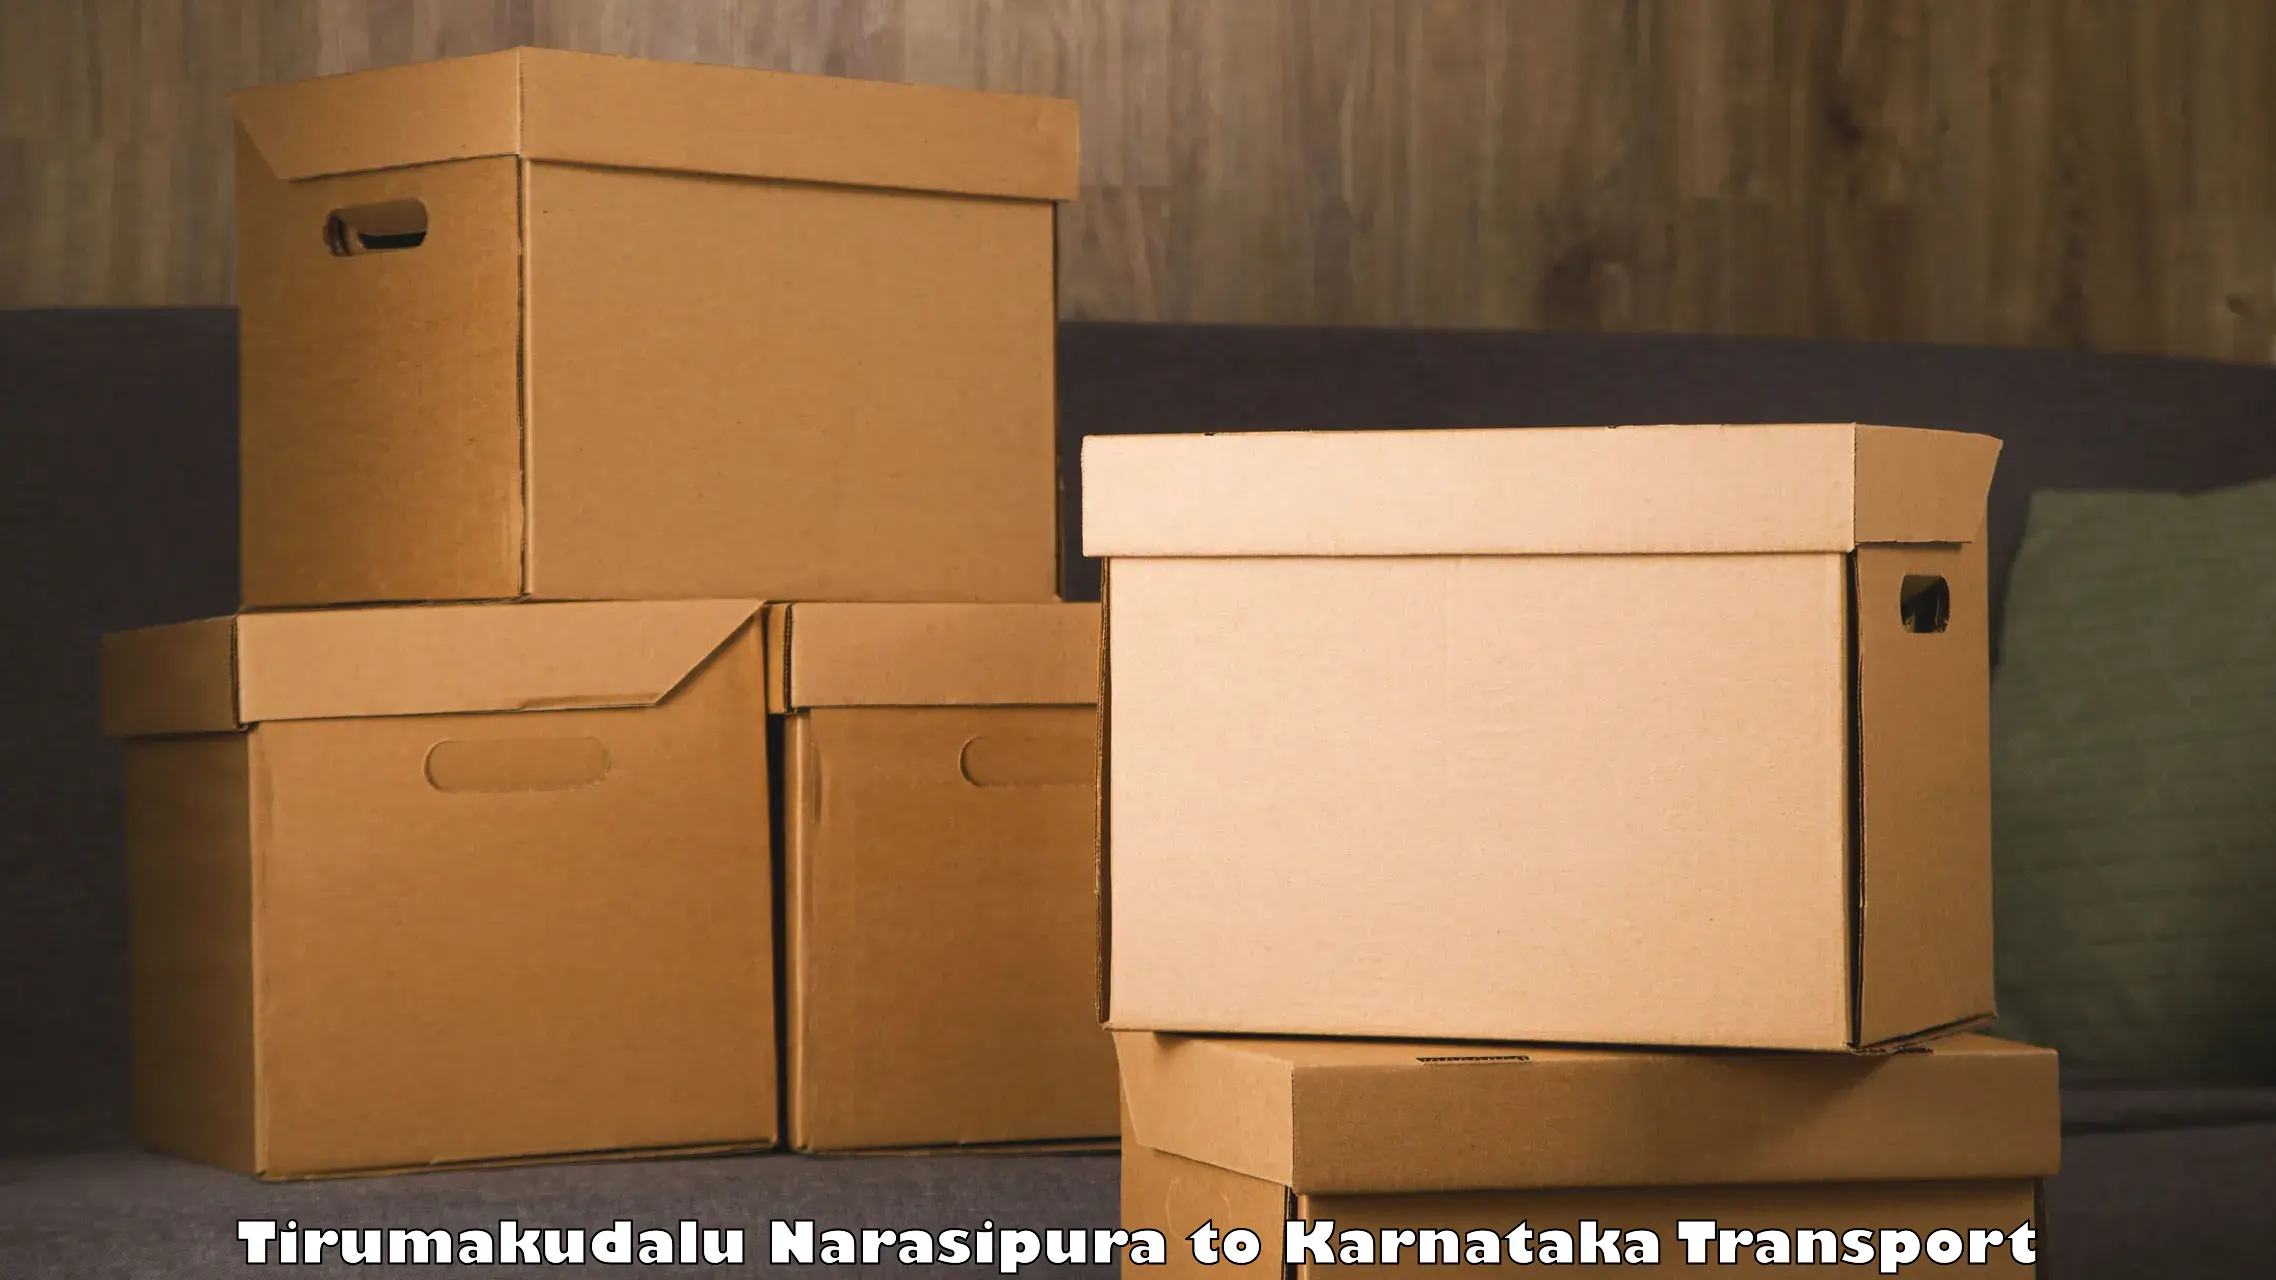 Nationwide transport services Tirumakudalu Narasipura to Karnataka